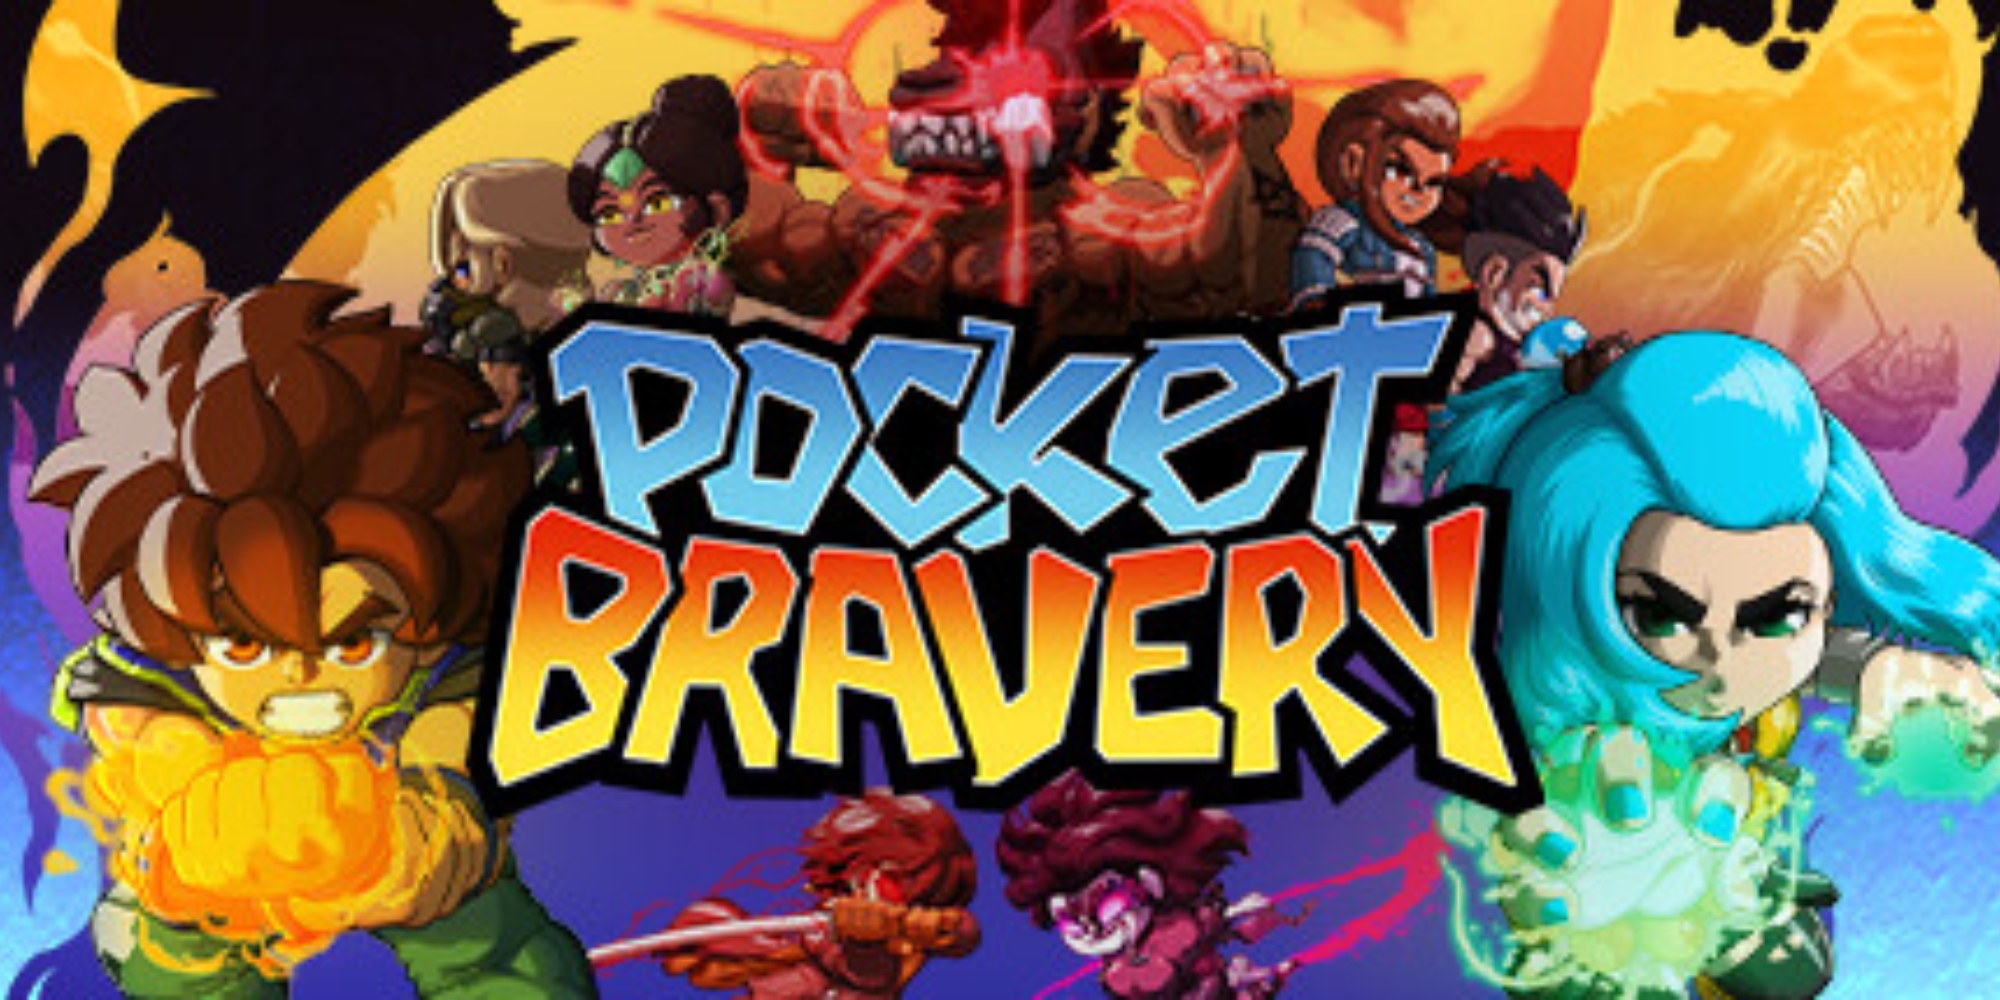 Pocket Bravery, Jogos para a Nintendo Switch, Jogos